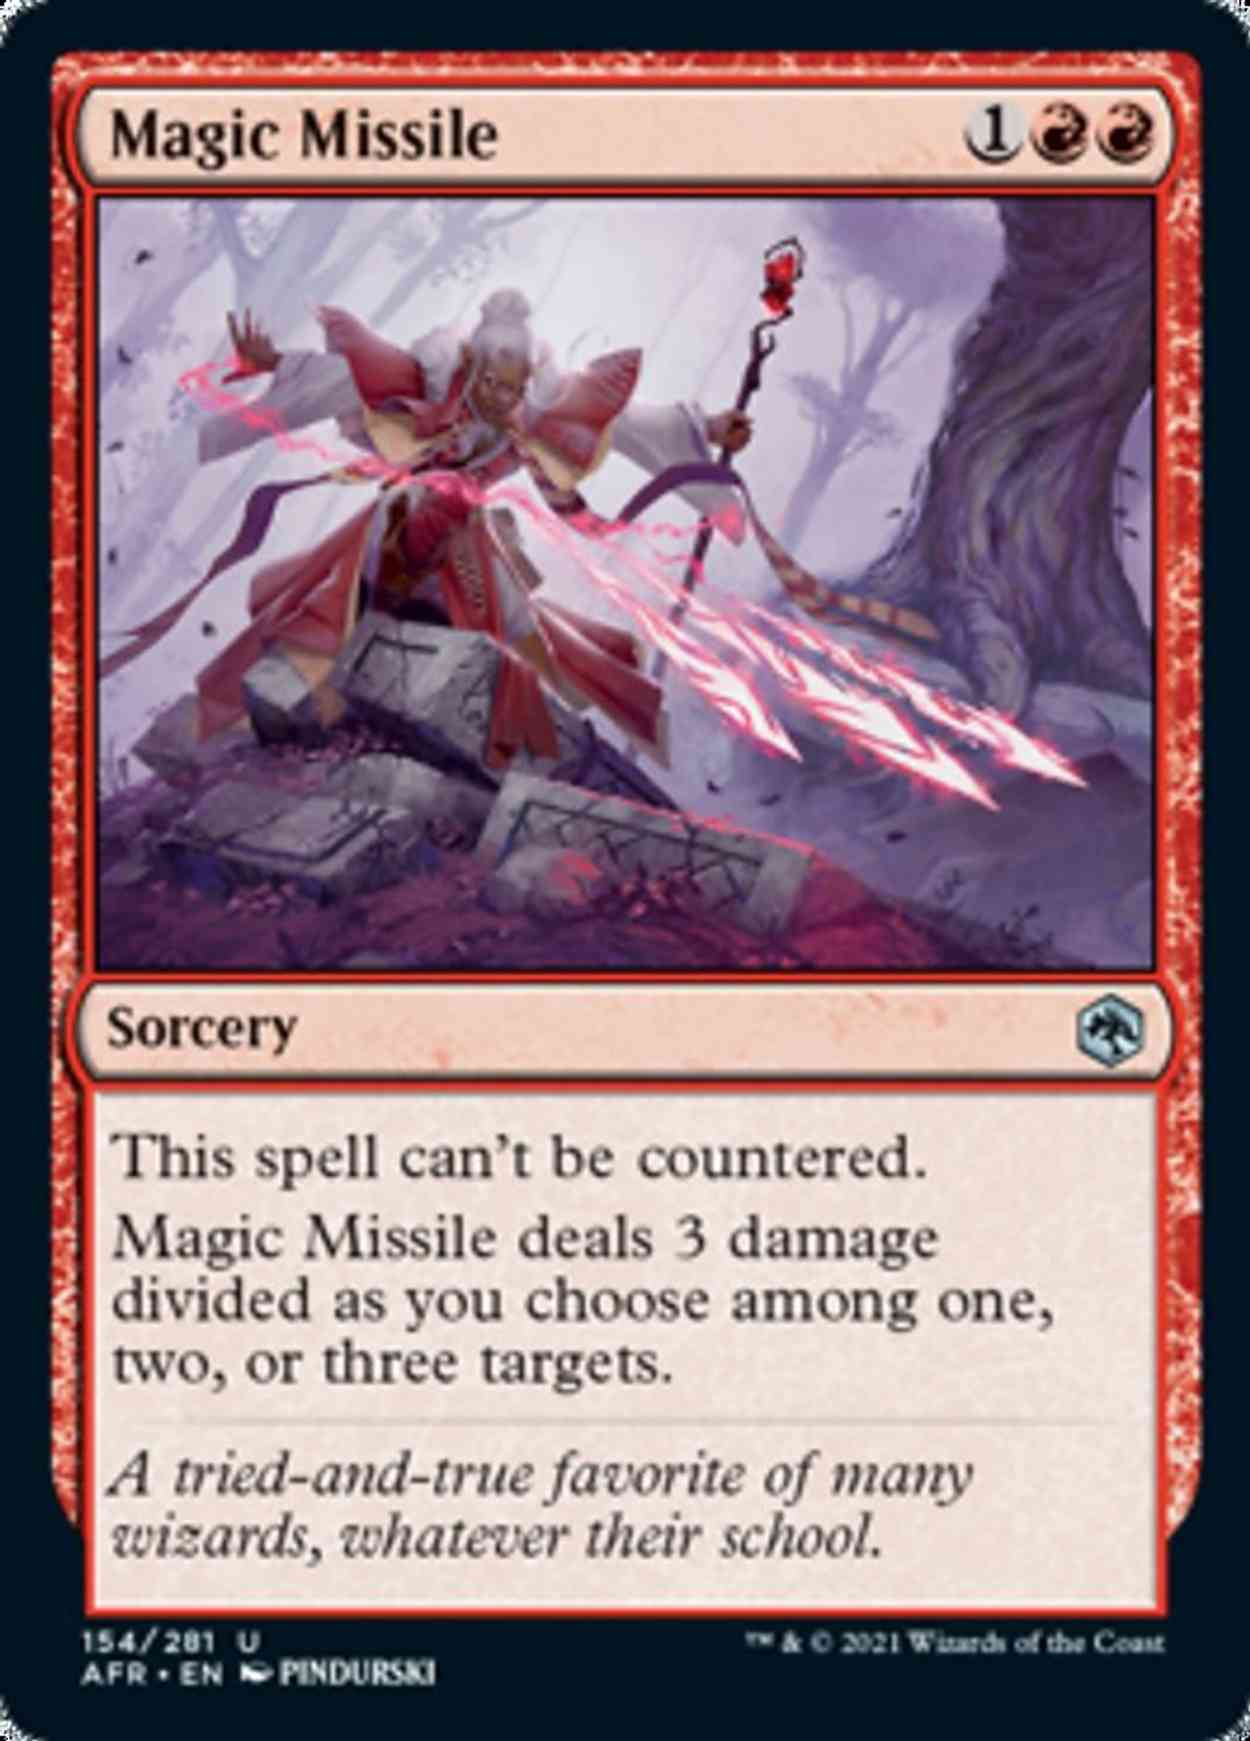 Magic Missile magic card front